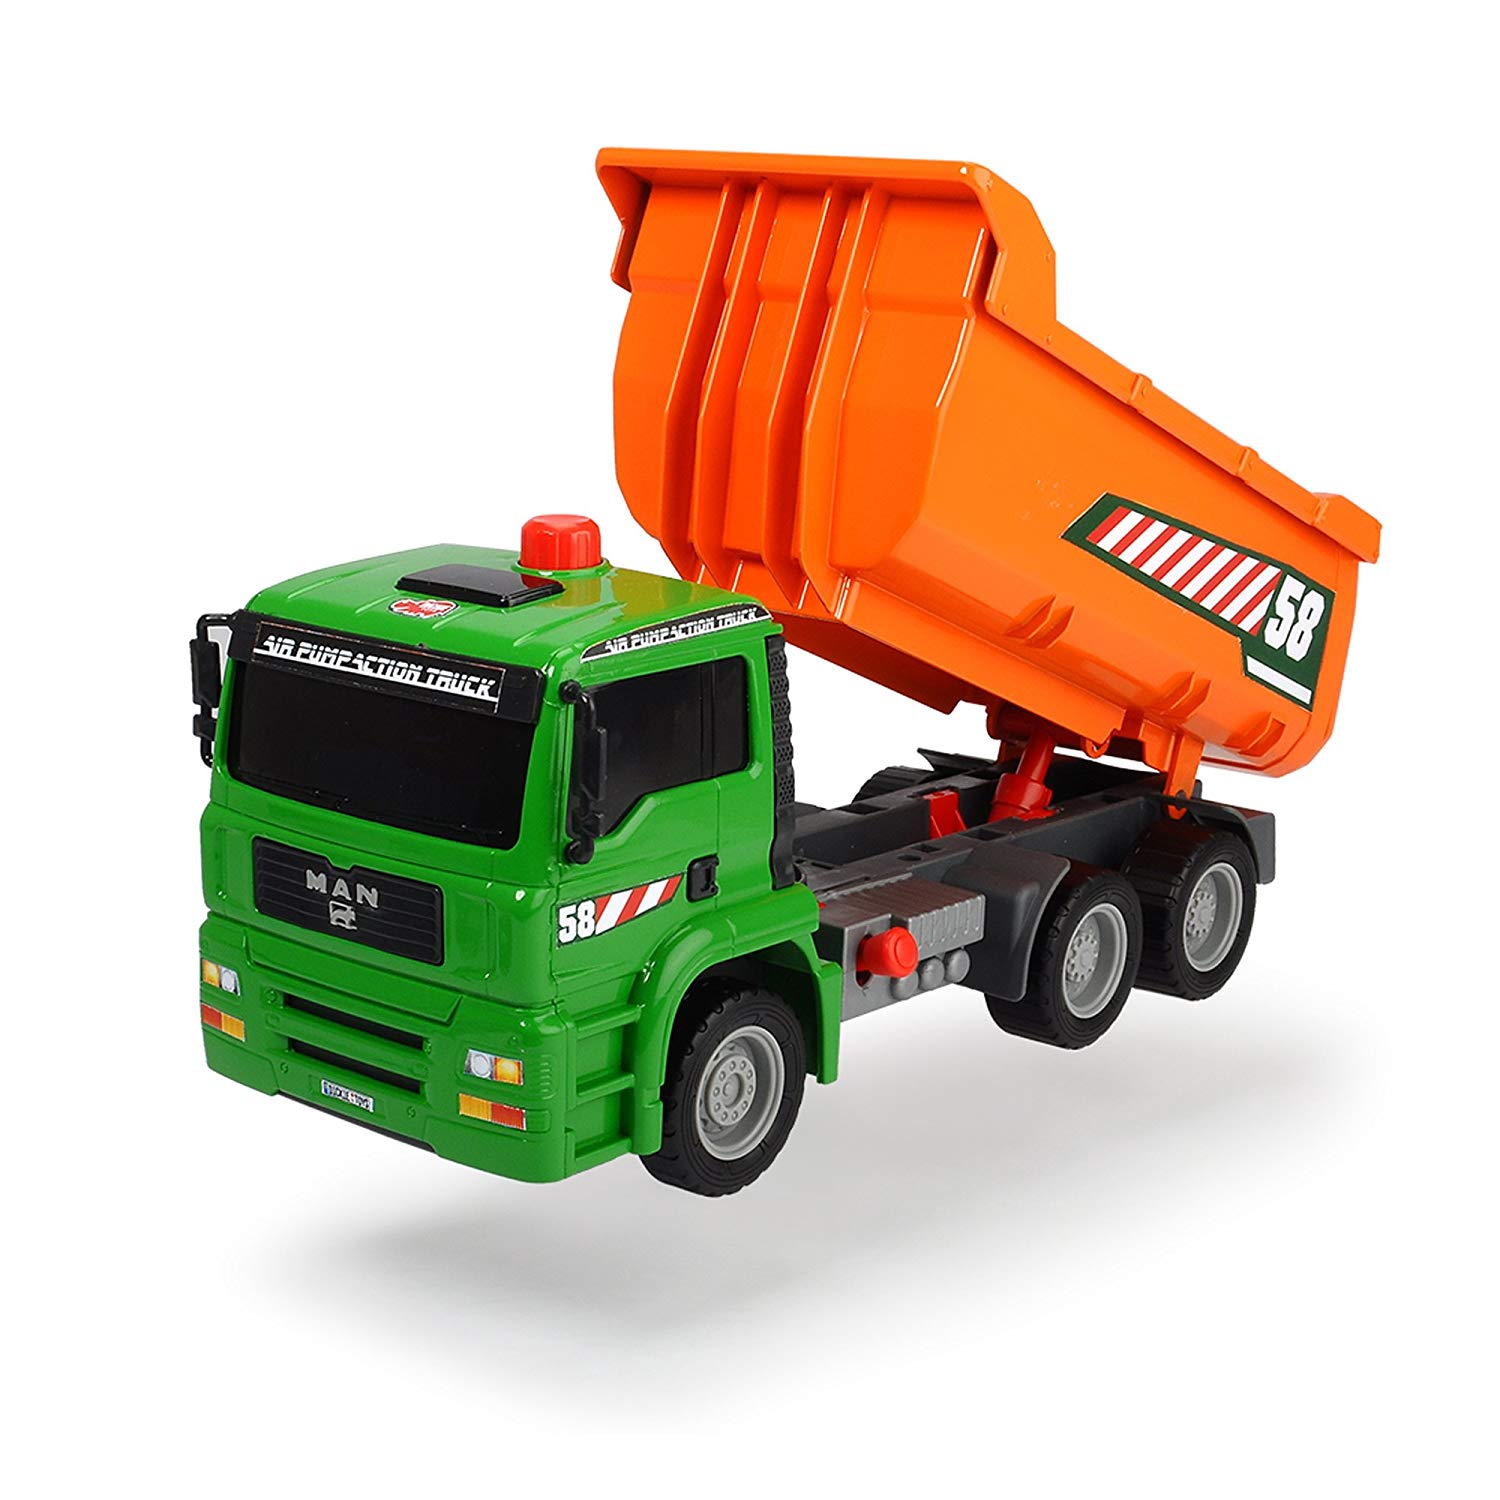 Dickie Toys Air Pump 203805005 Dump Truck Vehicle